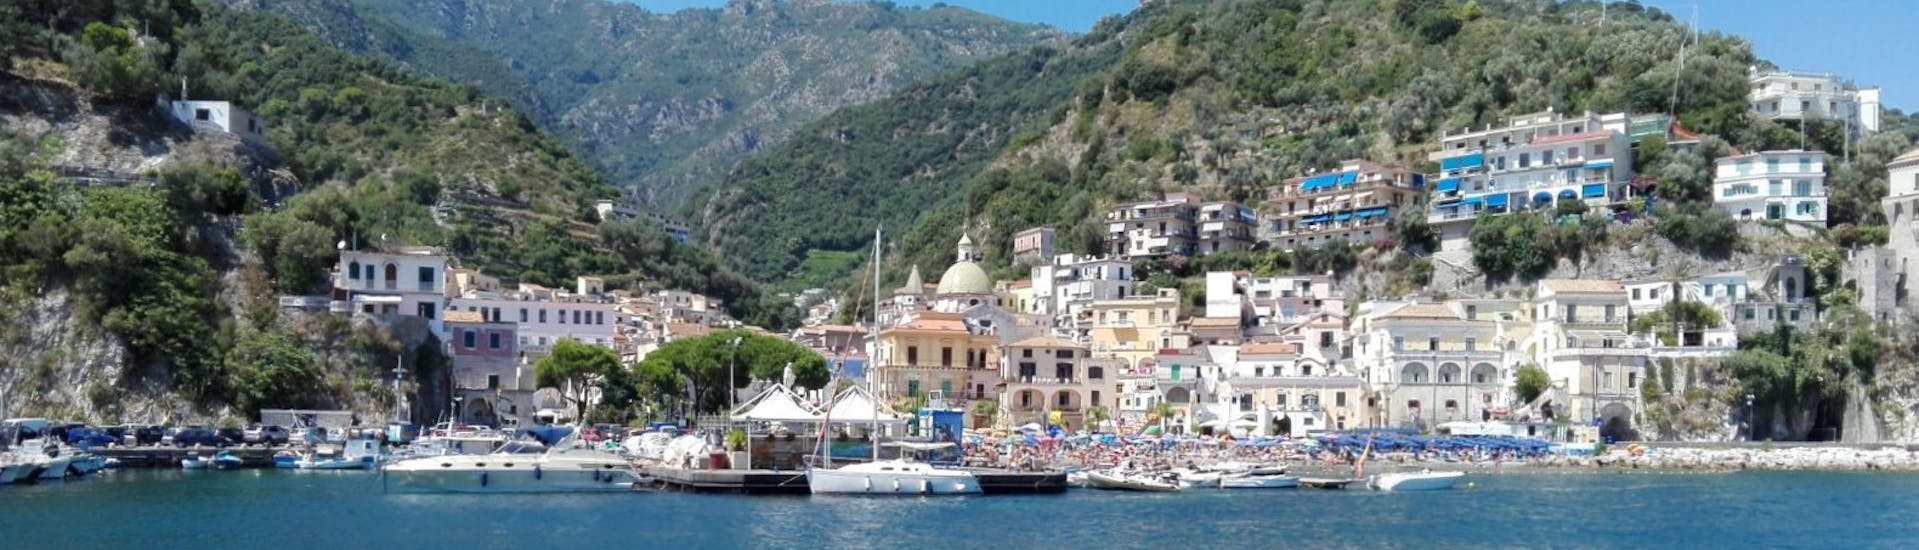 La côte sorrentine vu depuis le bateau lors de la Balade privée en bateau de Sorrente à Amalfi avec Apéritif et Snorkeling avec The Morgans.